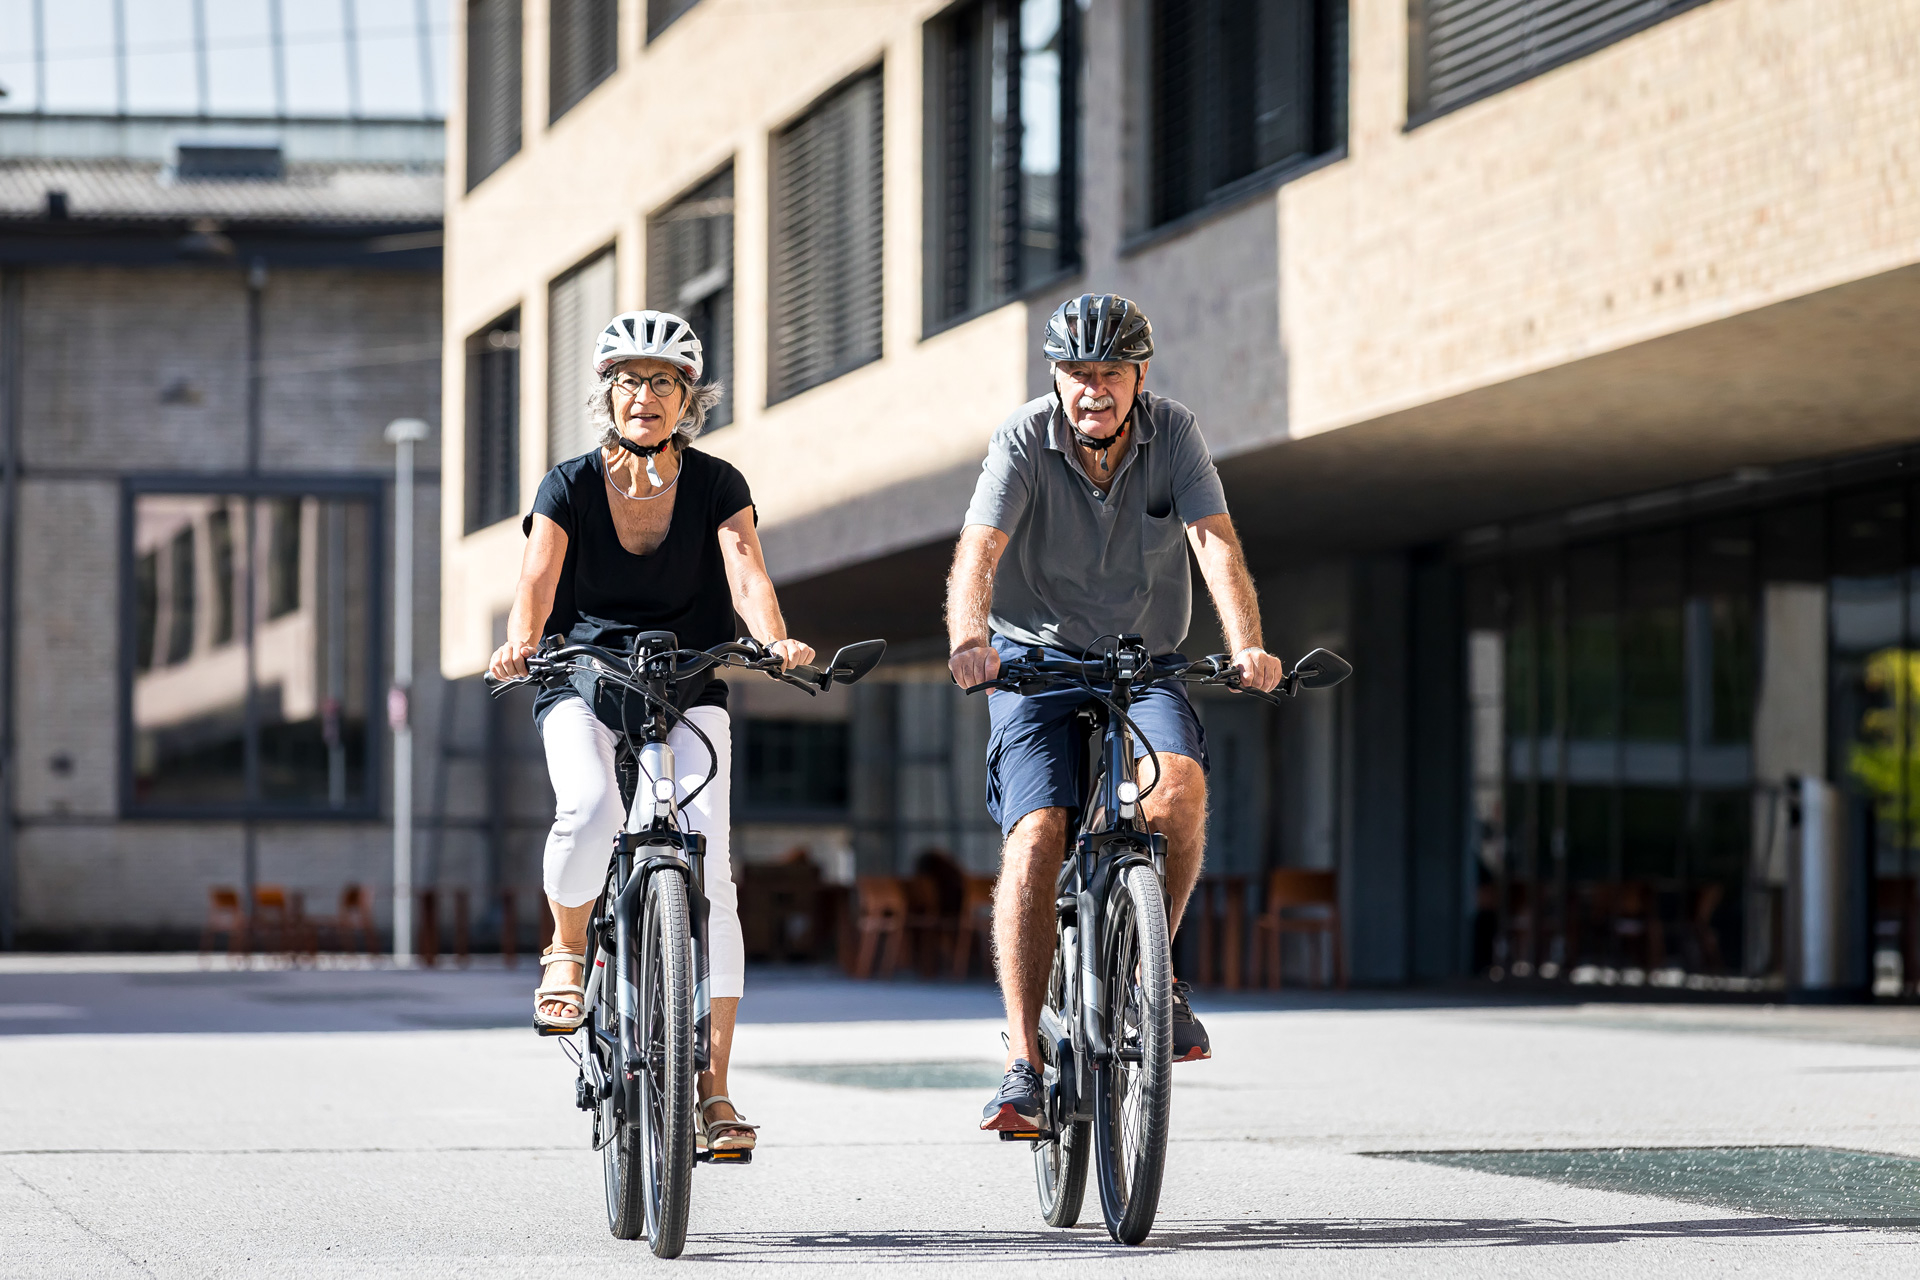 Zwei ältere Menschen fahren E-Bike in urbaner Umgebung mit Solarvignette